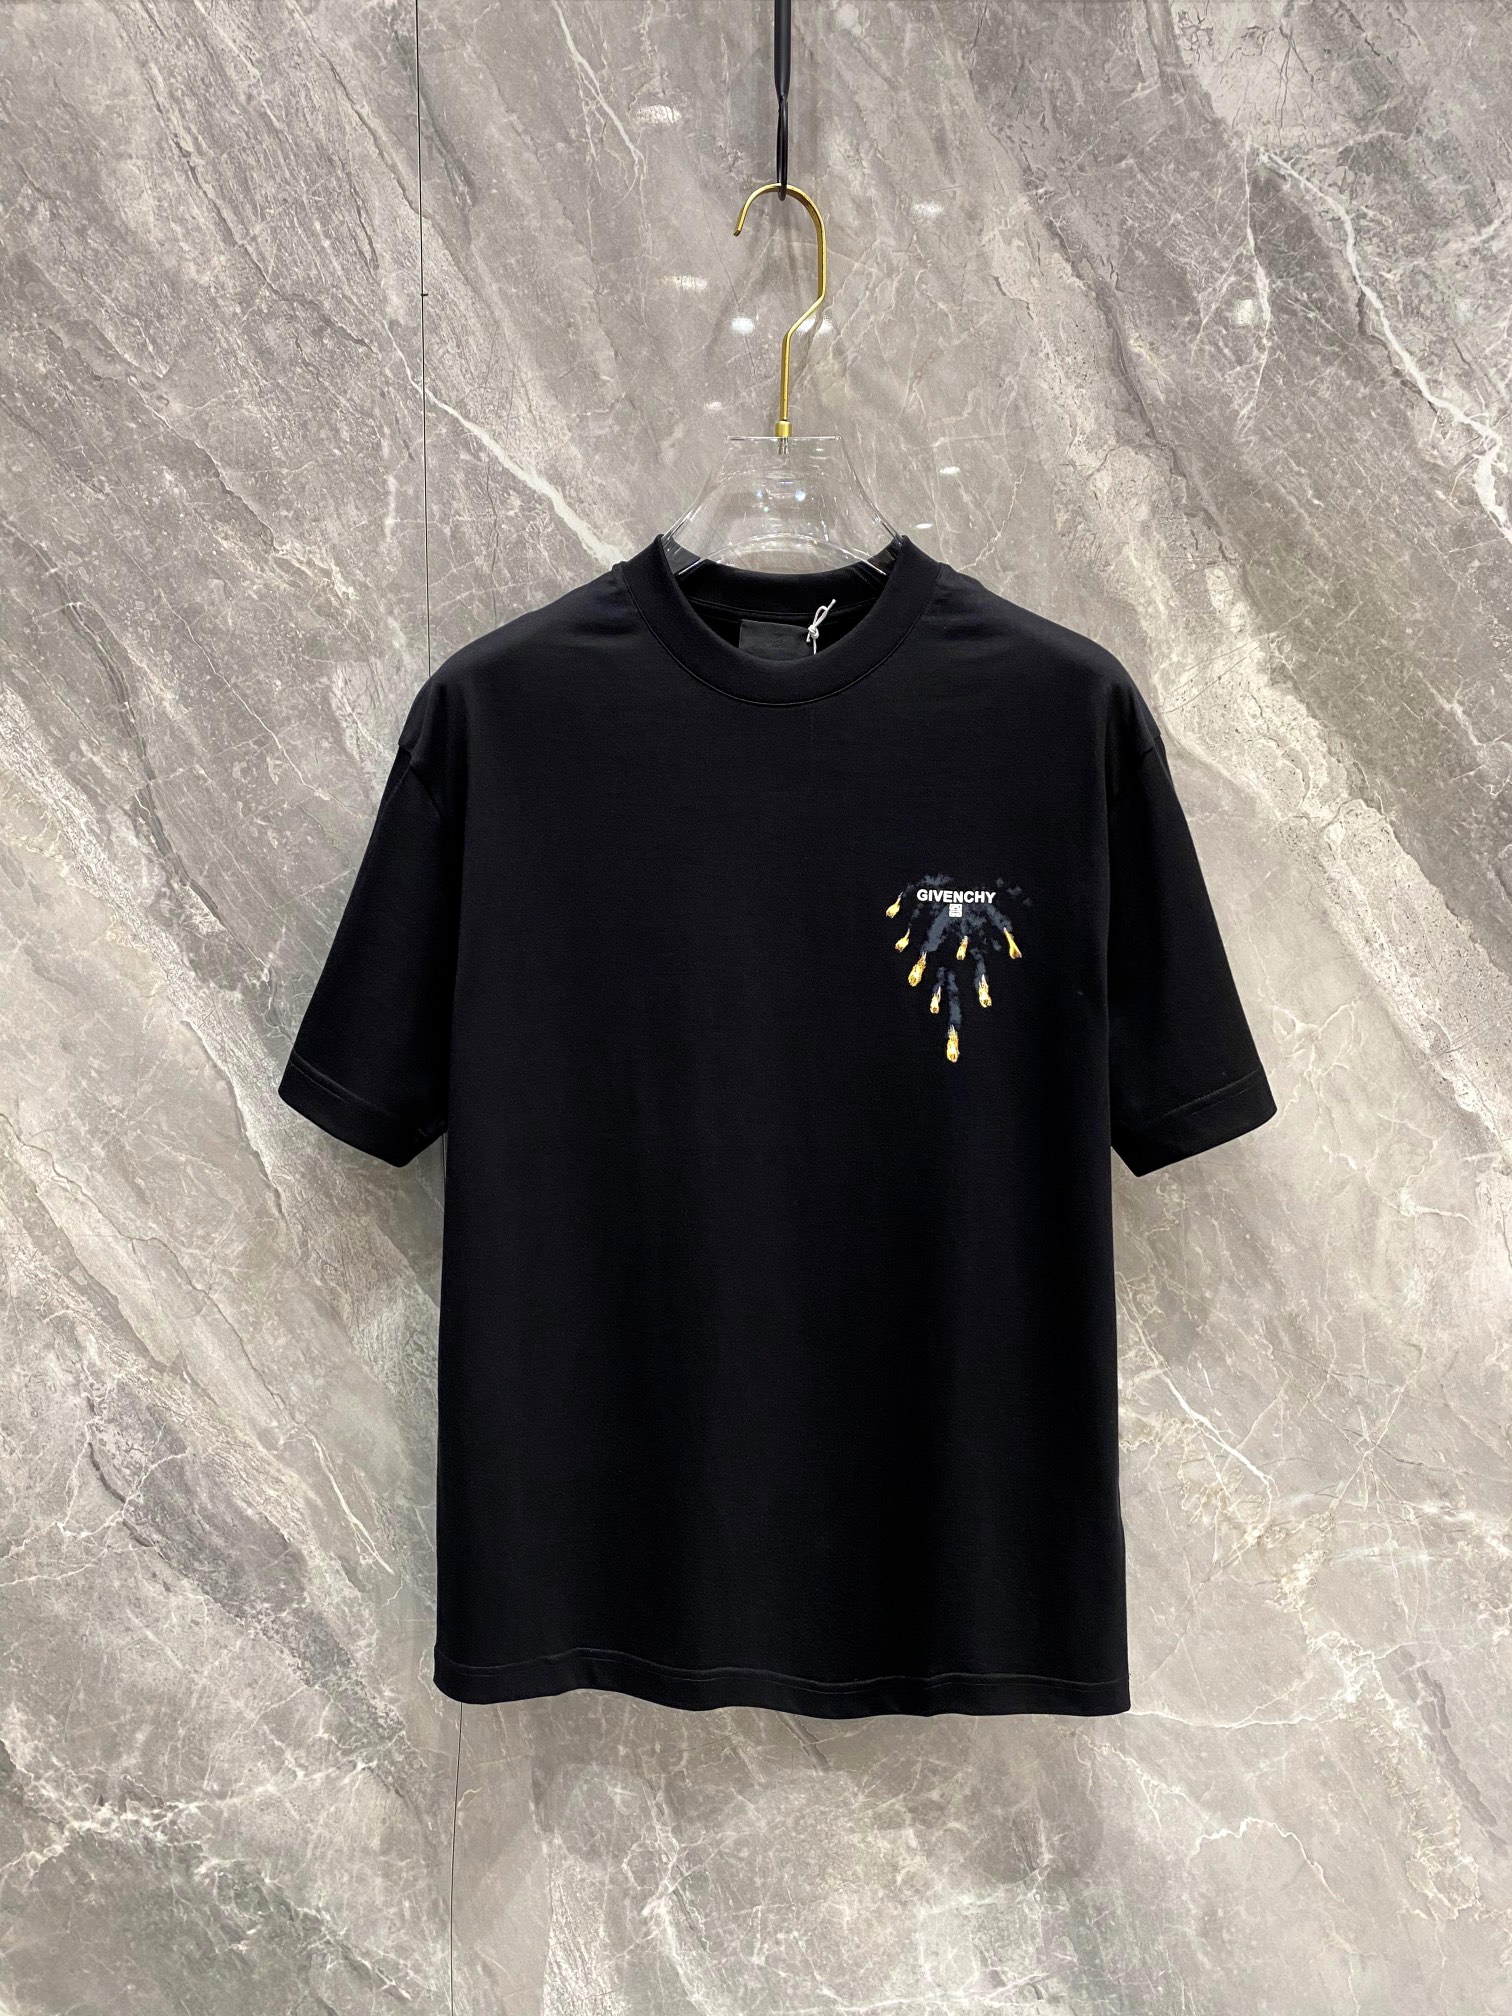 Givenchy Clothing T-Shirt Unisex Short Sleeve